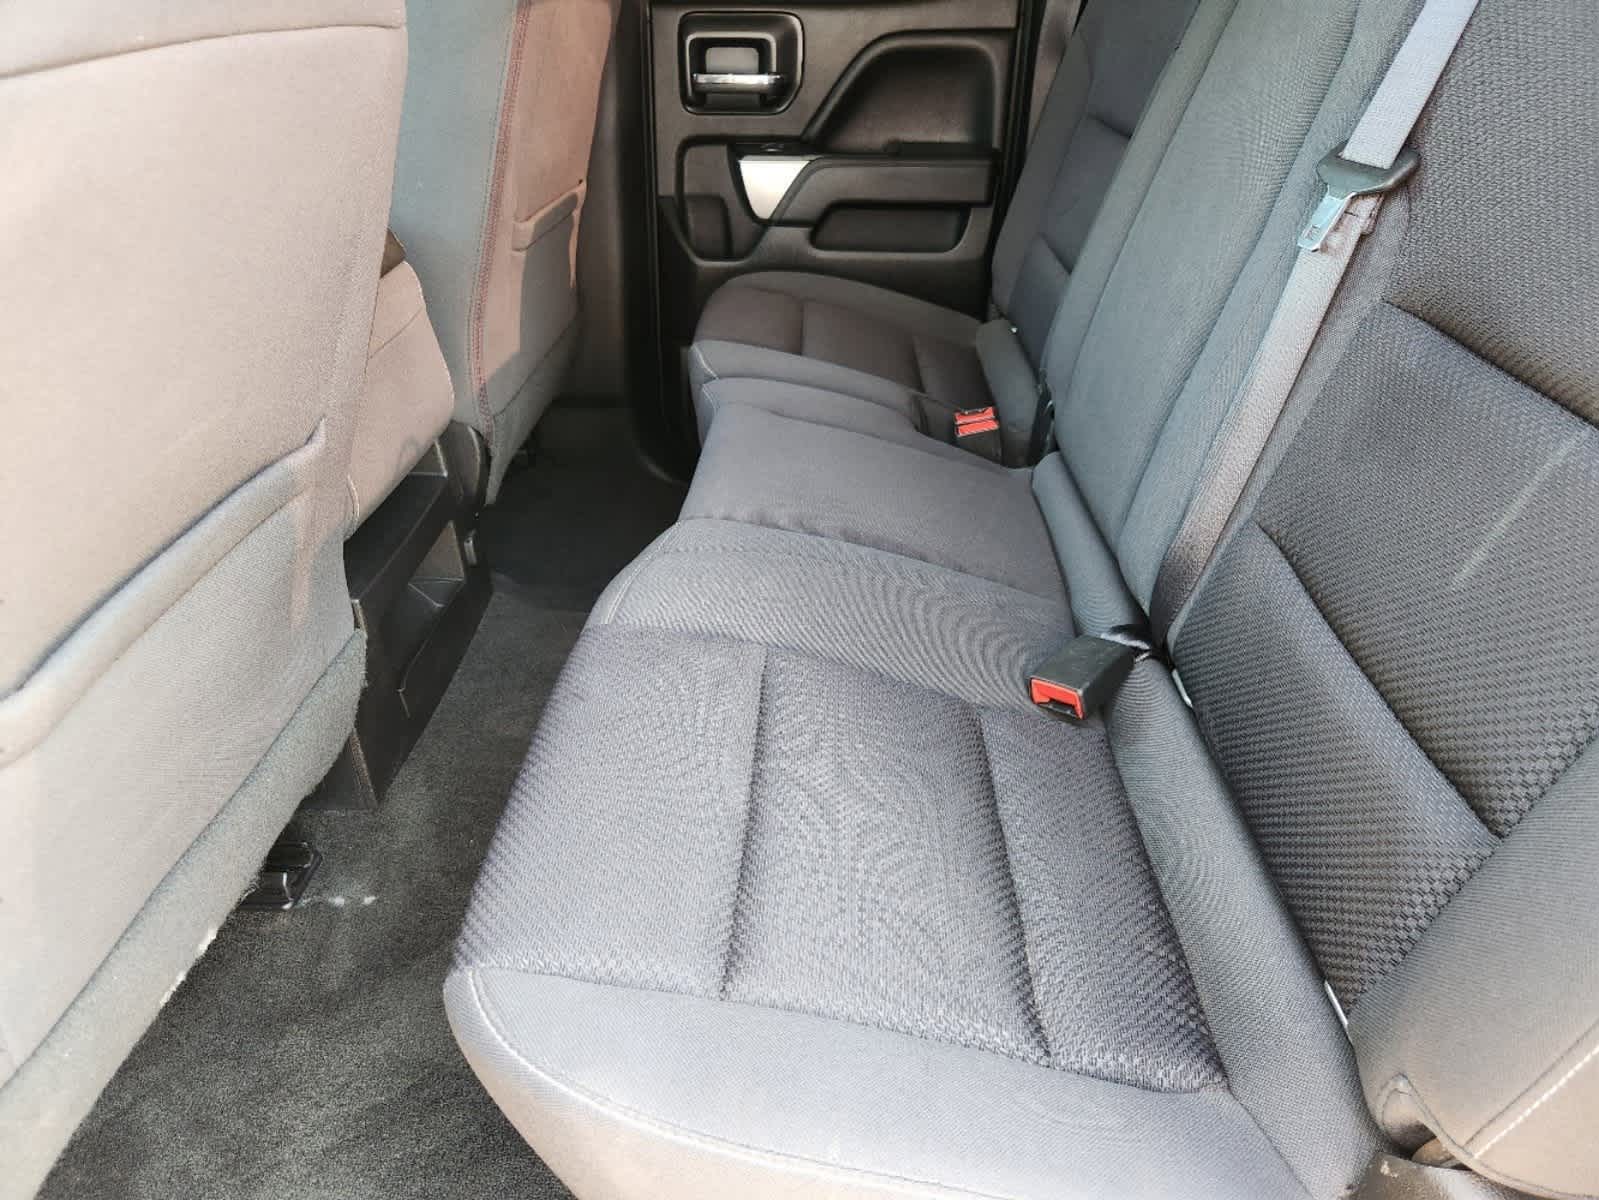 2018 Chevrolet Silverado 1500 LT 4WD Double Cab 143.5 29